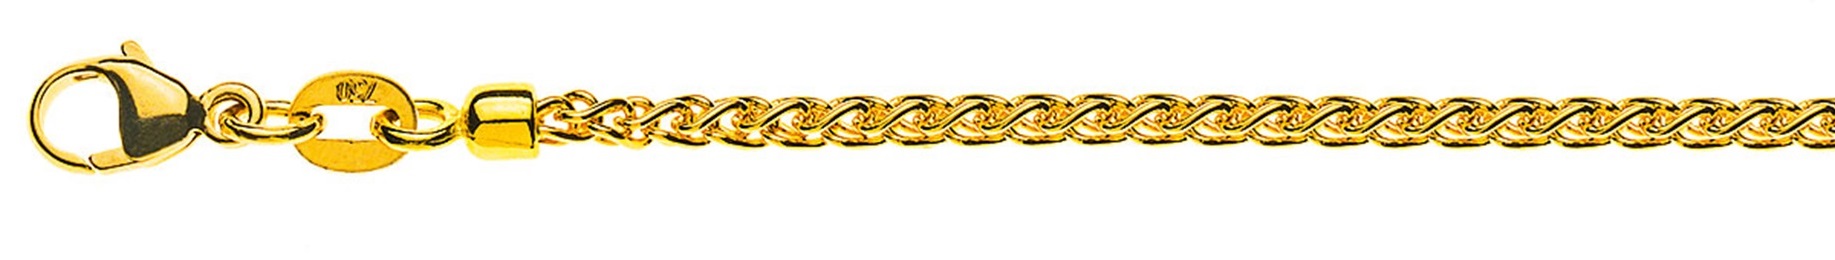 AURONOS Prestige Halskette Gelbgold 18K Zopfkette 45cm 2.15mm